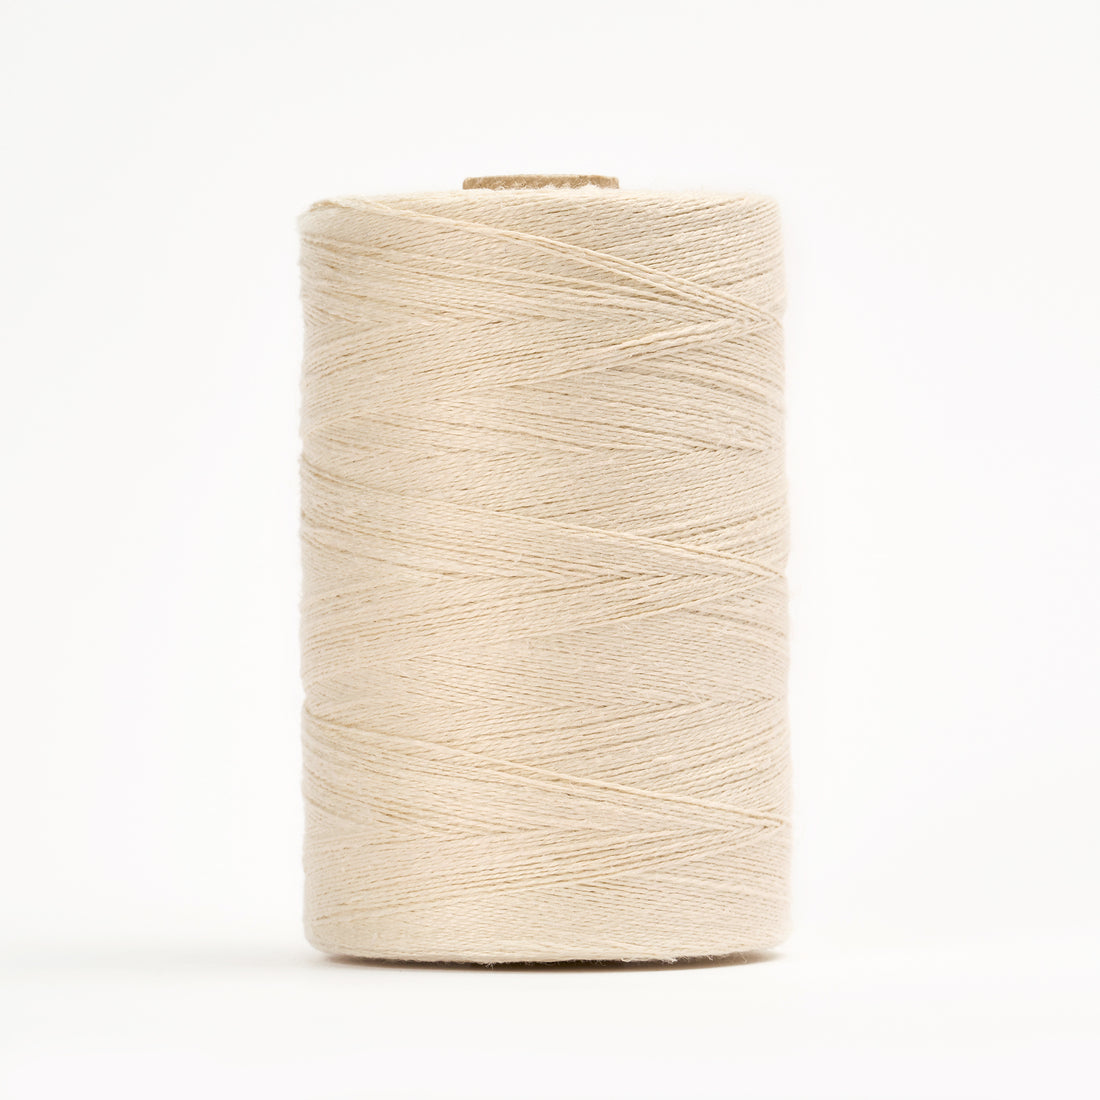 Hemp 2/8 - Weaving yarn - Brassard